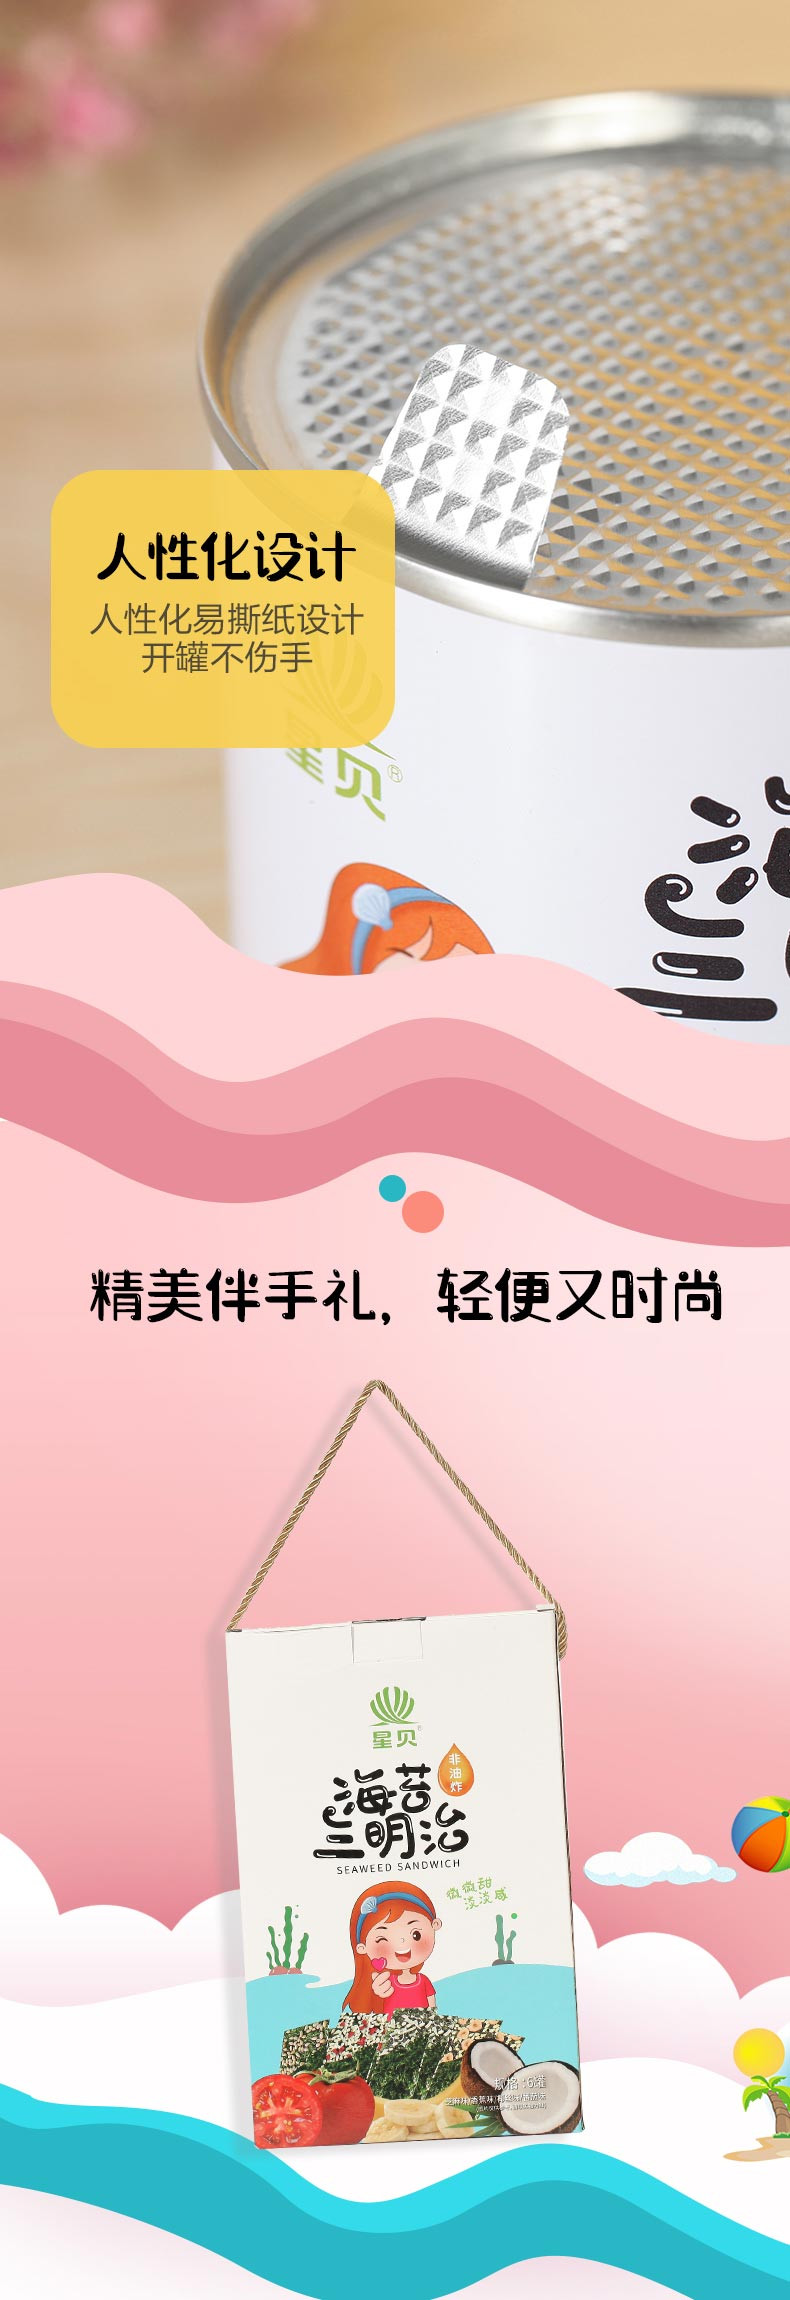 【温邮振兴】温州特产海苔三明治35g/罐×2罐【2选1】